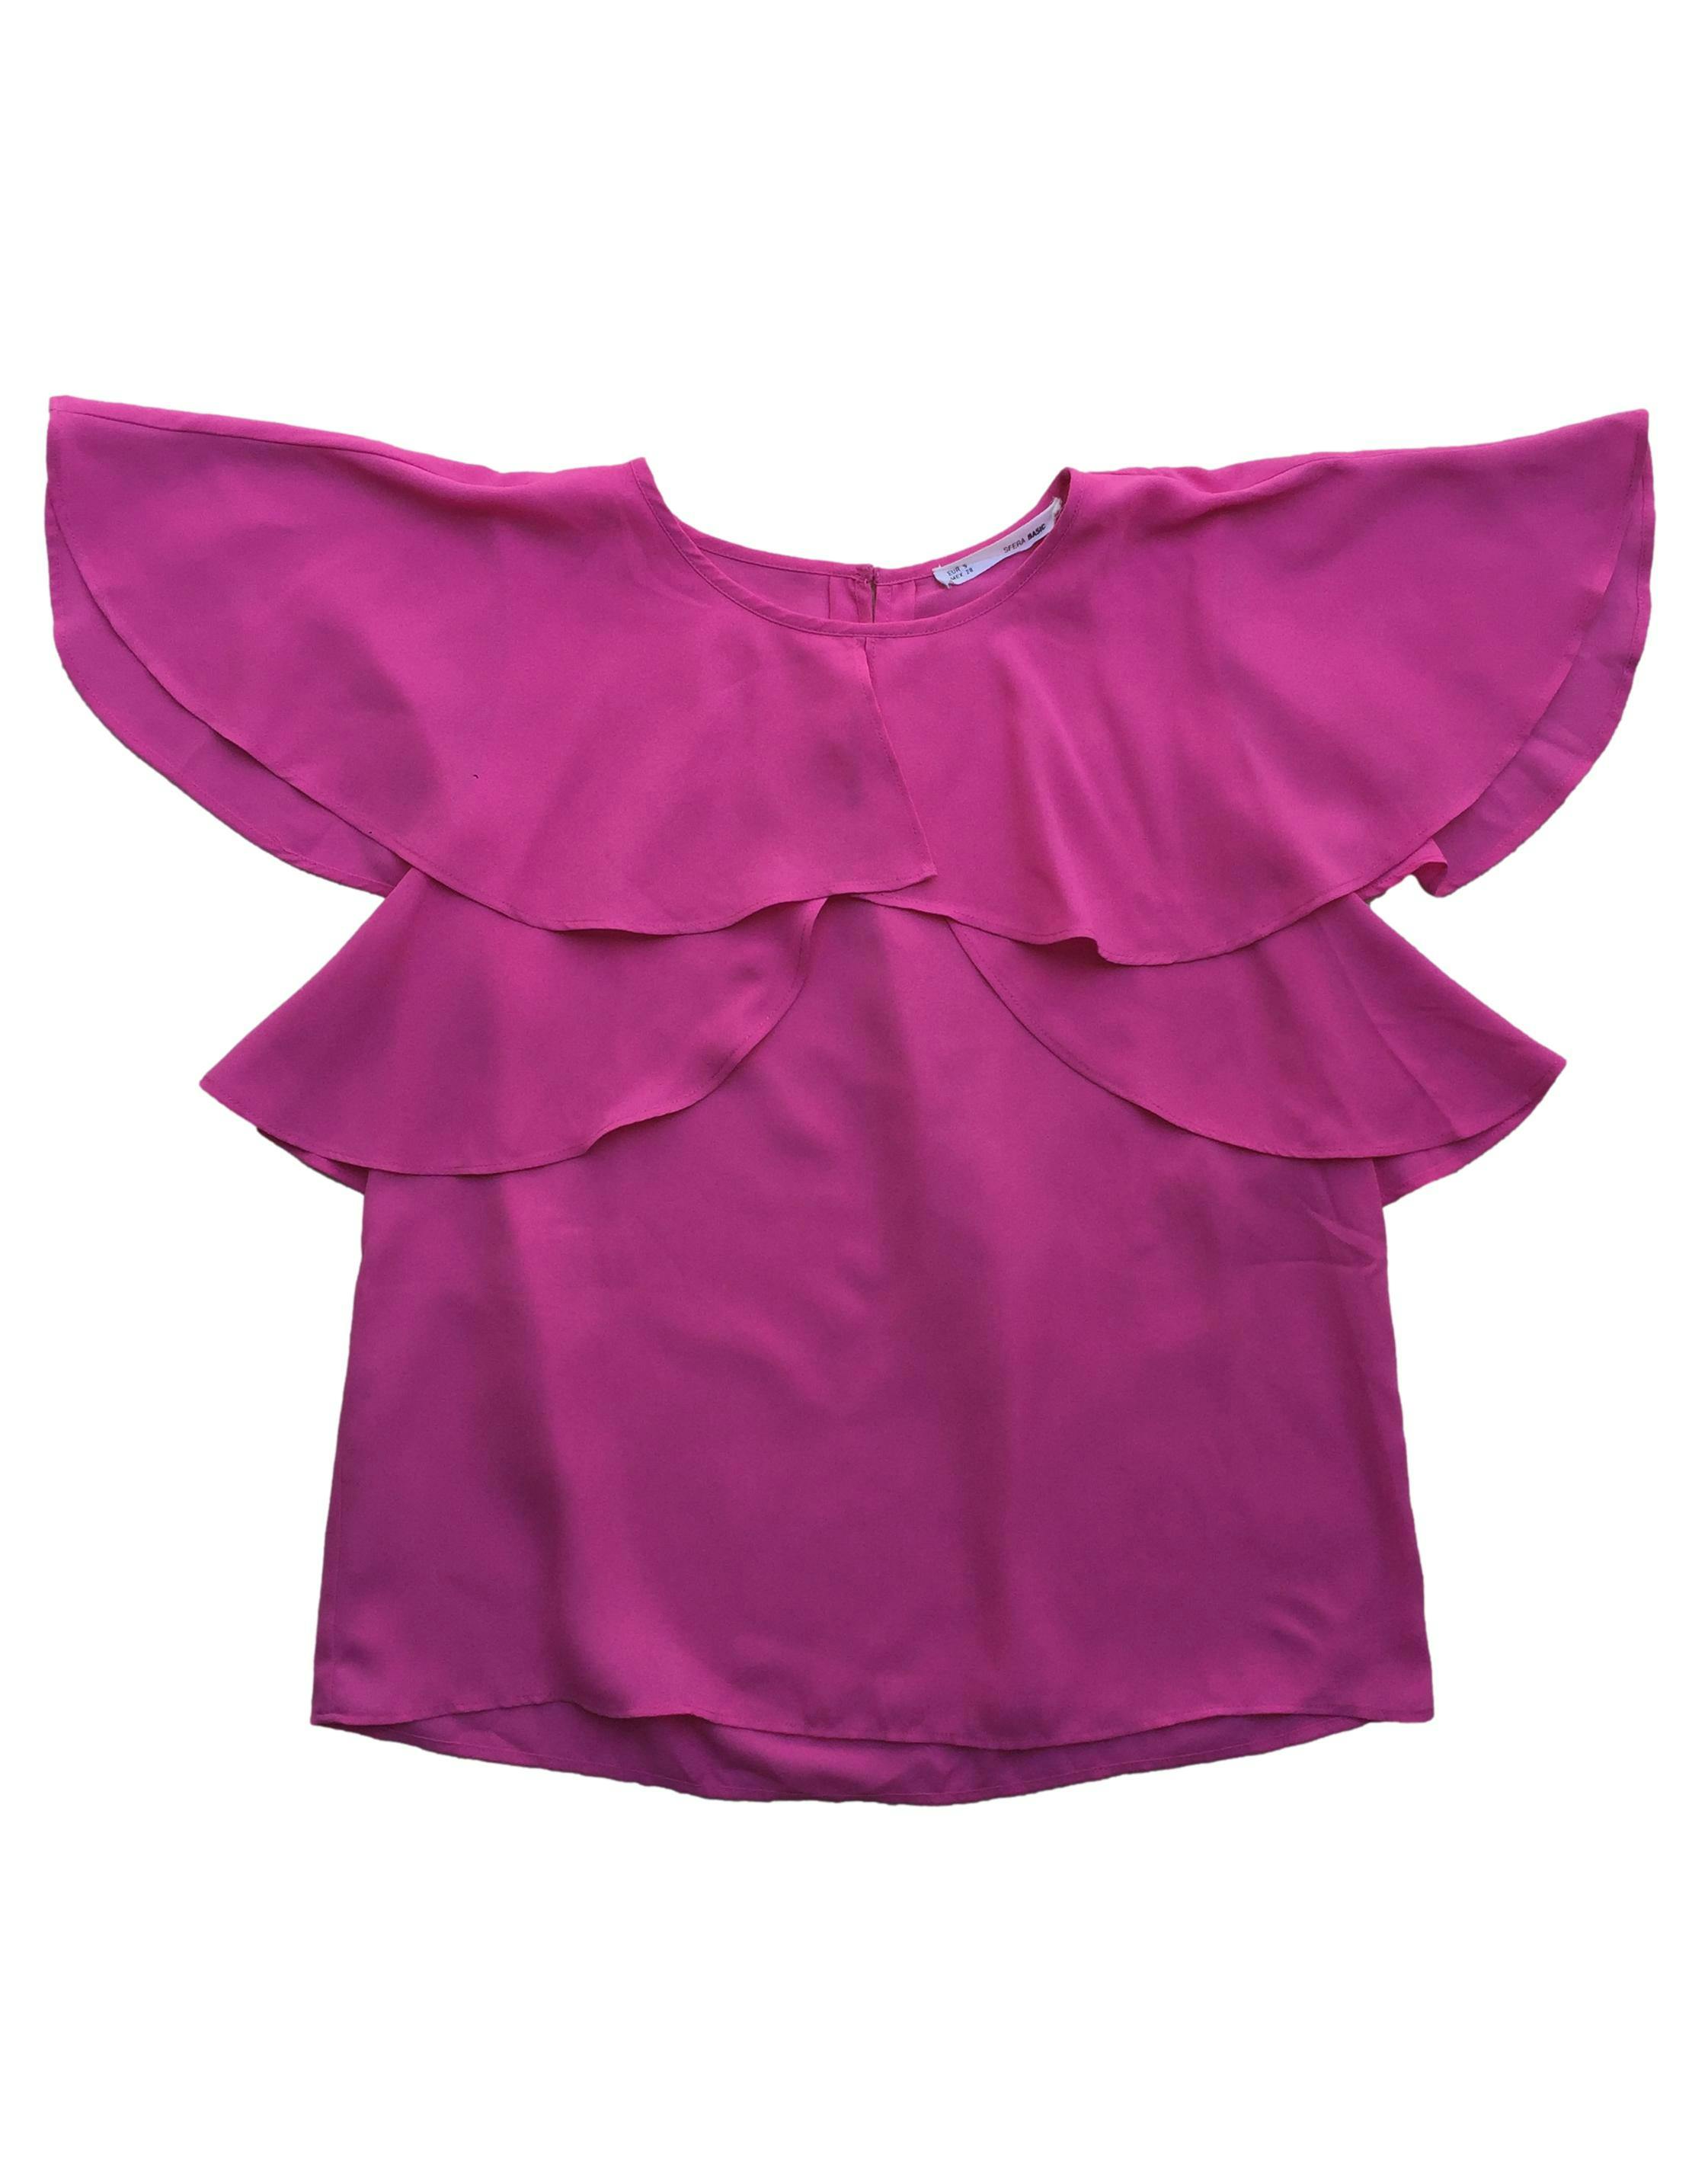 Blusa Sfera rosa chicle, volantes en el pecho y abertura posterior. Busto: 94cm, Largo: 58cm